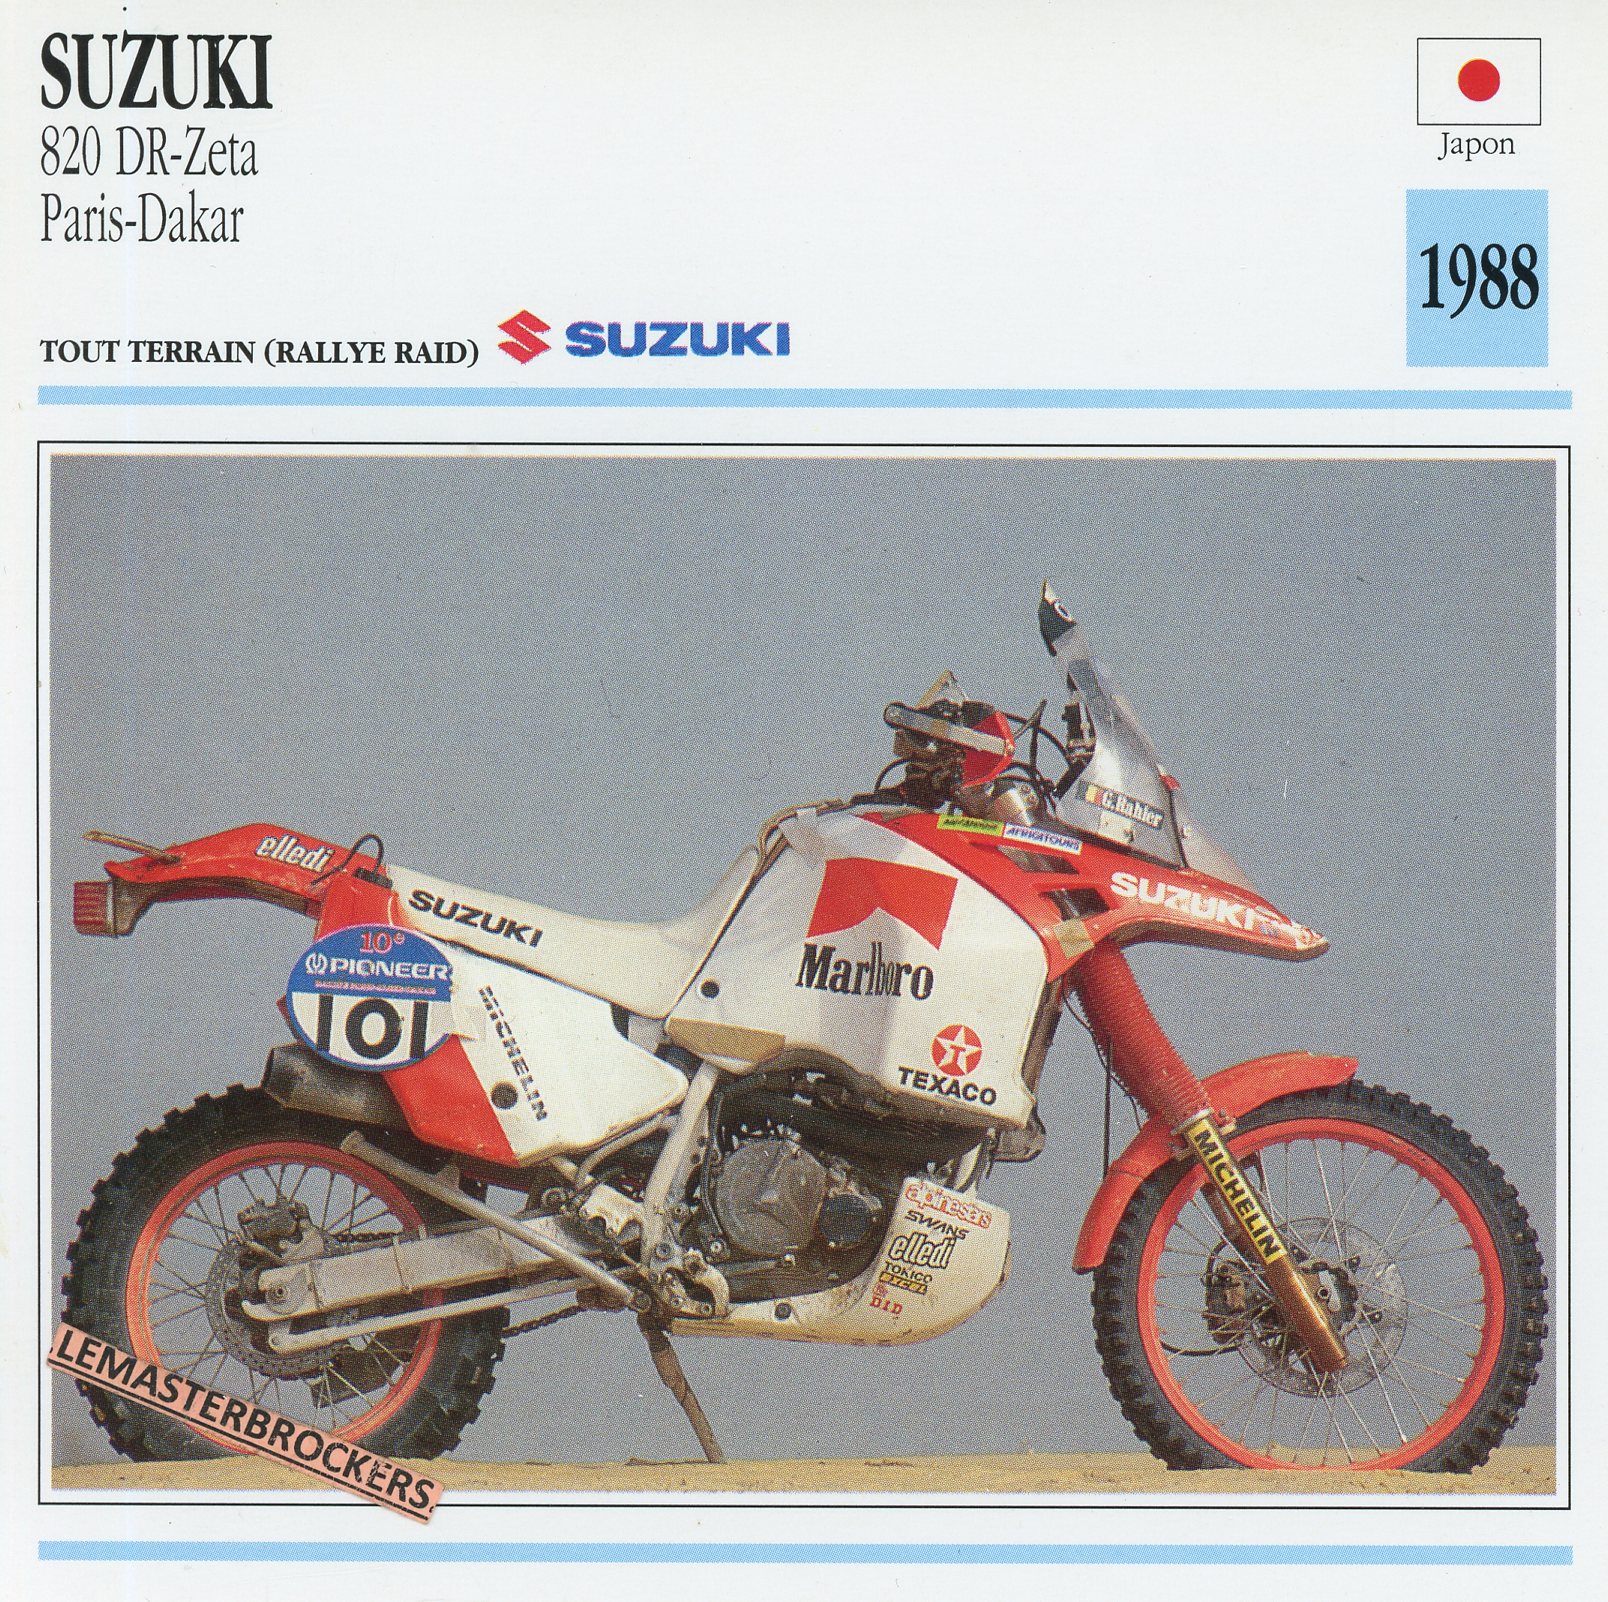 SUZUKI-DR-820-ZETA-PARIS-DAKAR-1988-FICHE-MOTO-LEMASTERBROCKERS